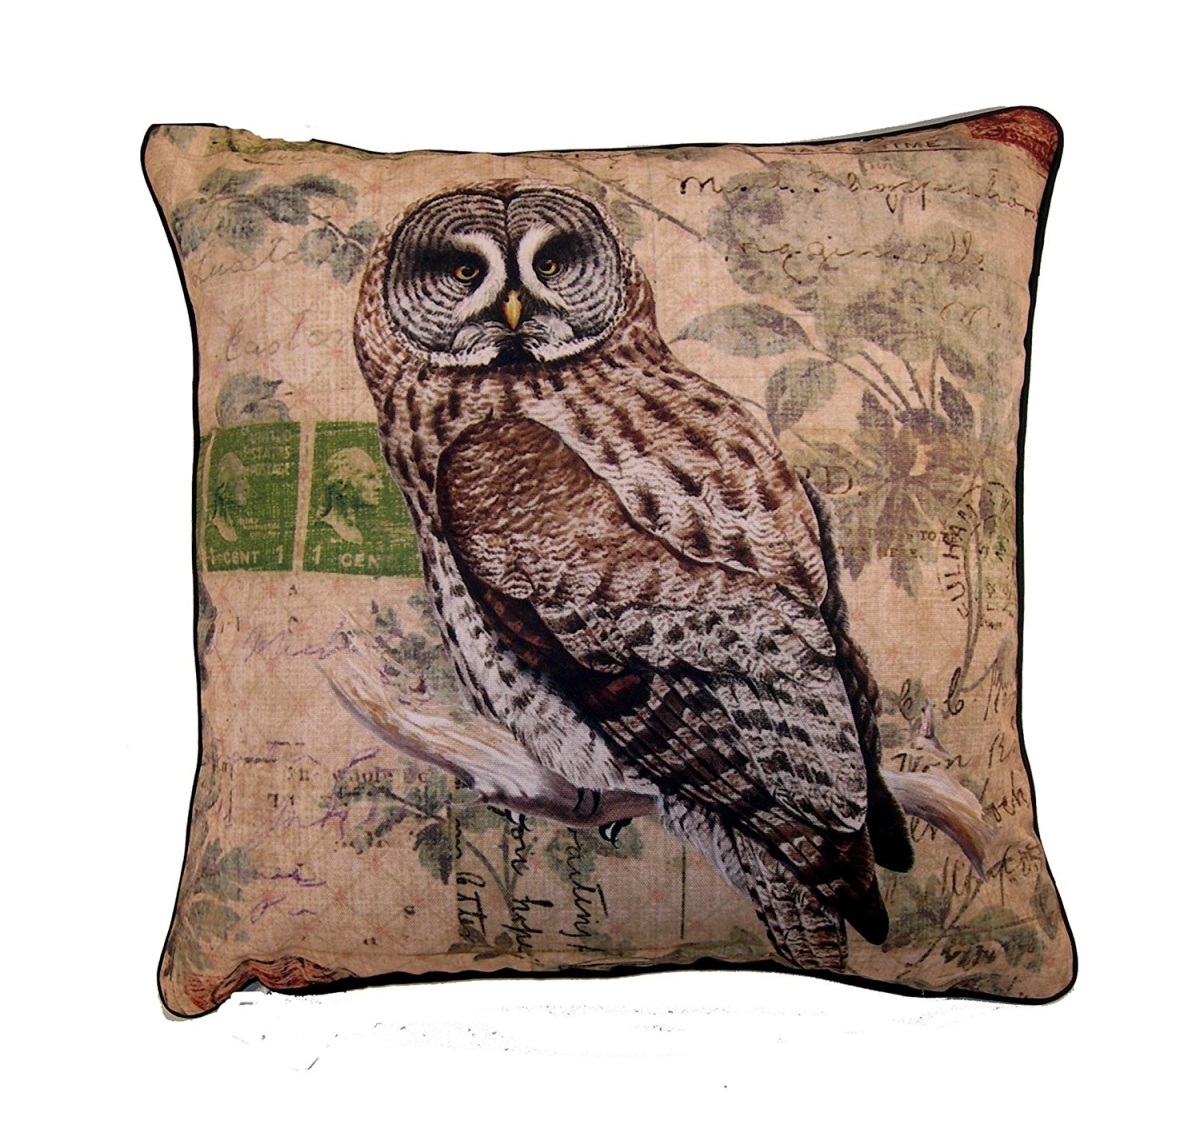 18 In. Elegant Decor Owl Throw Pillow, Brown